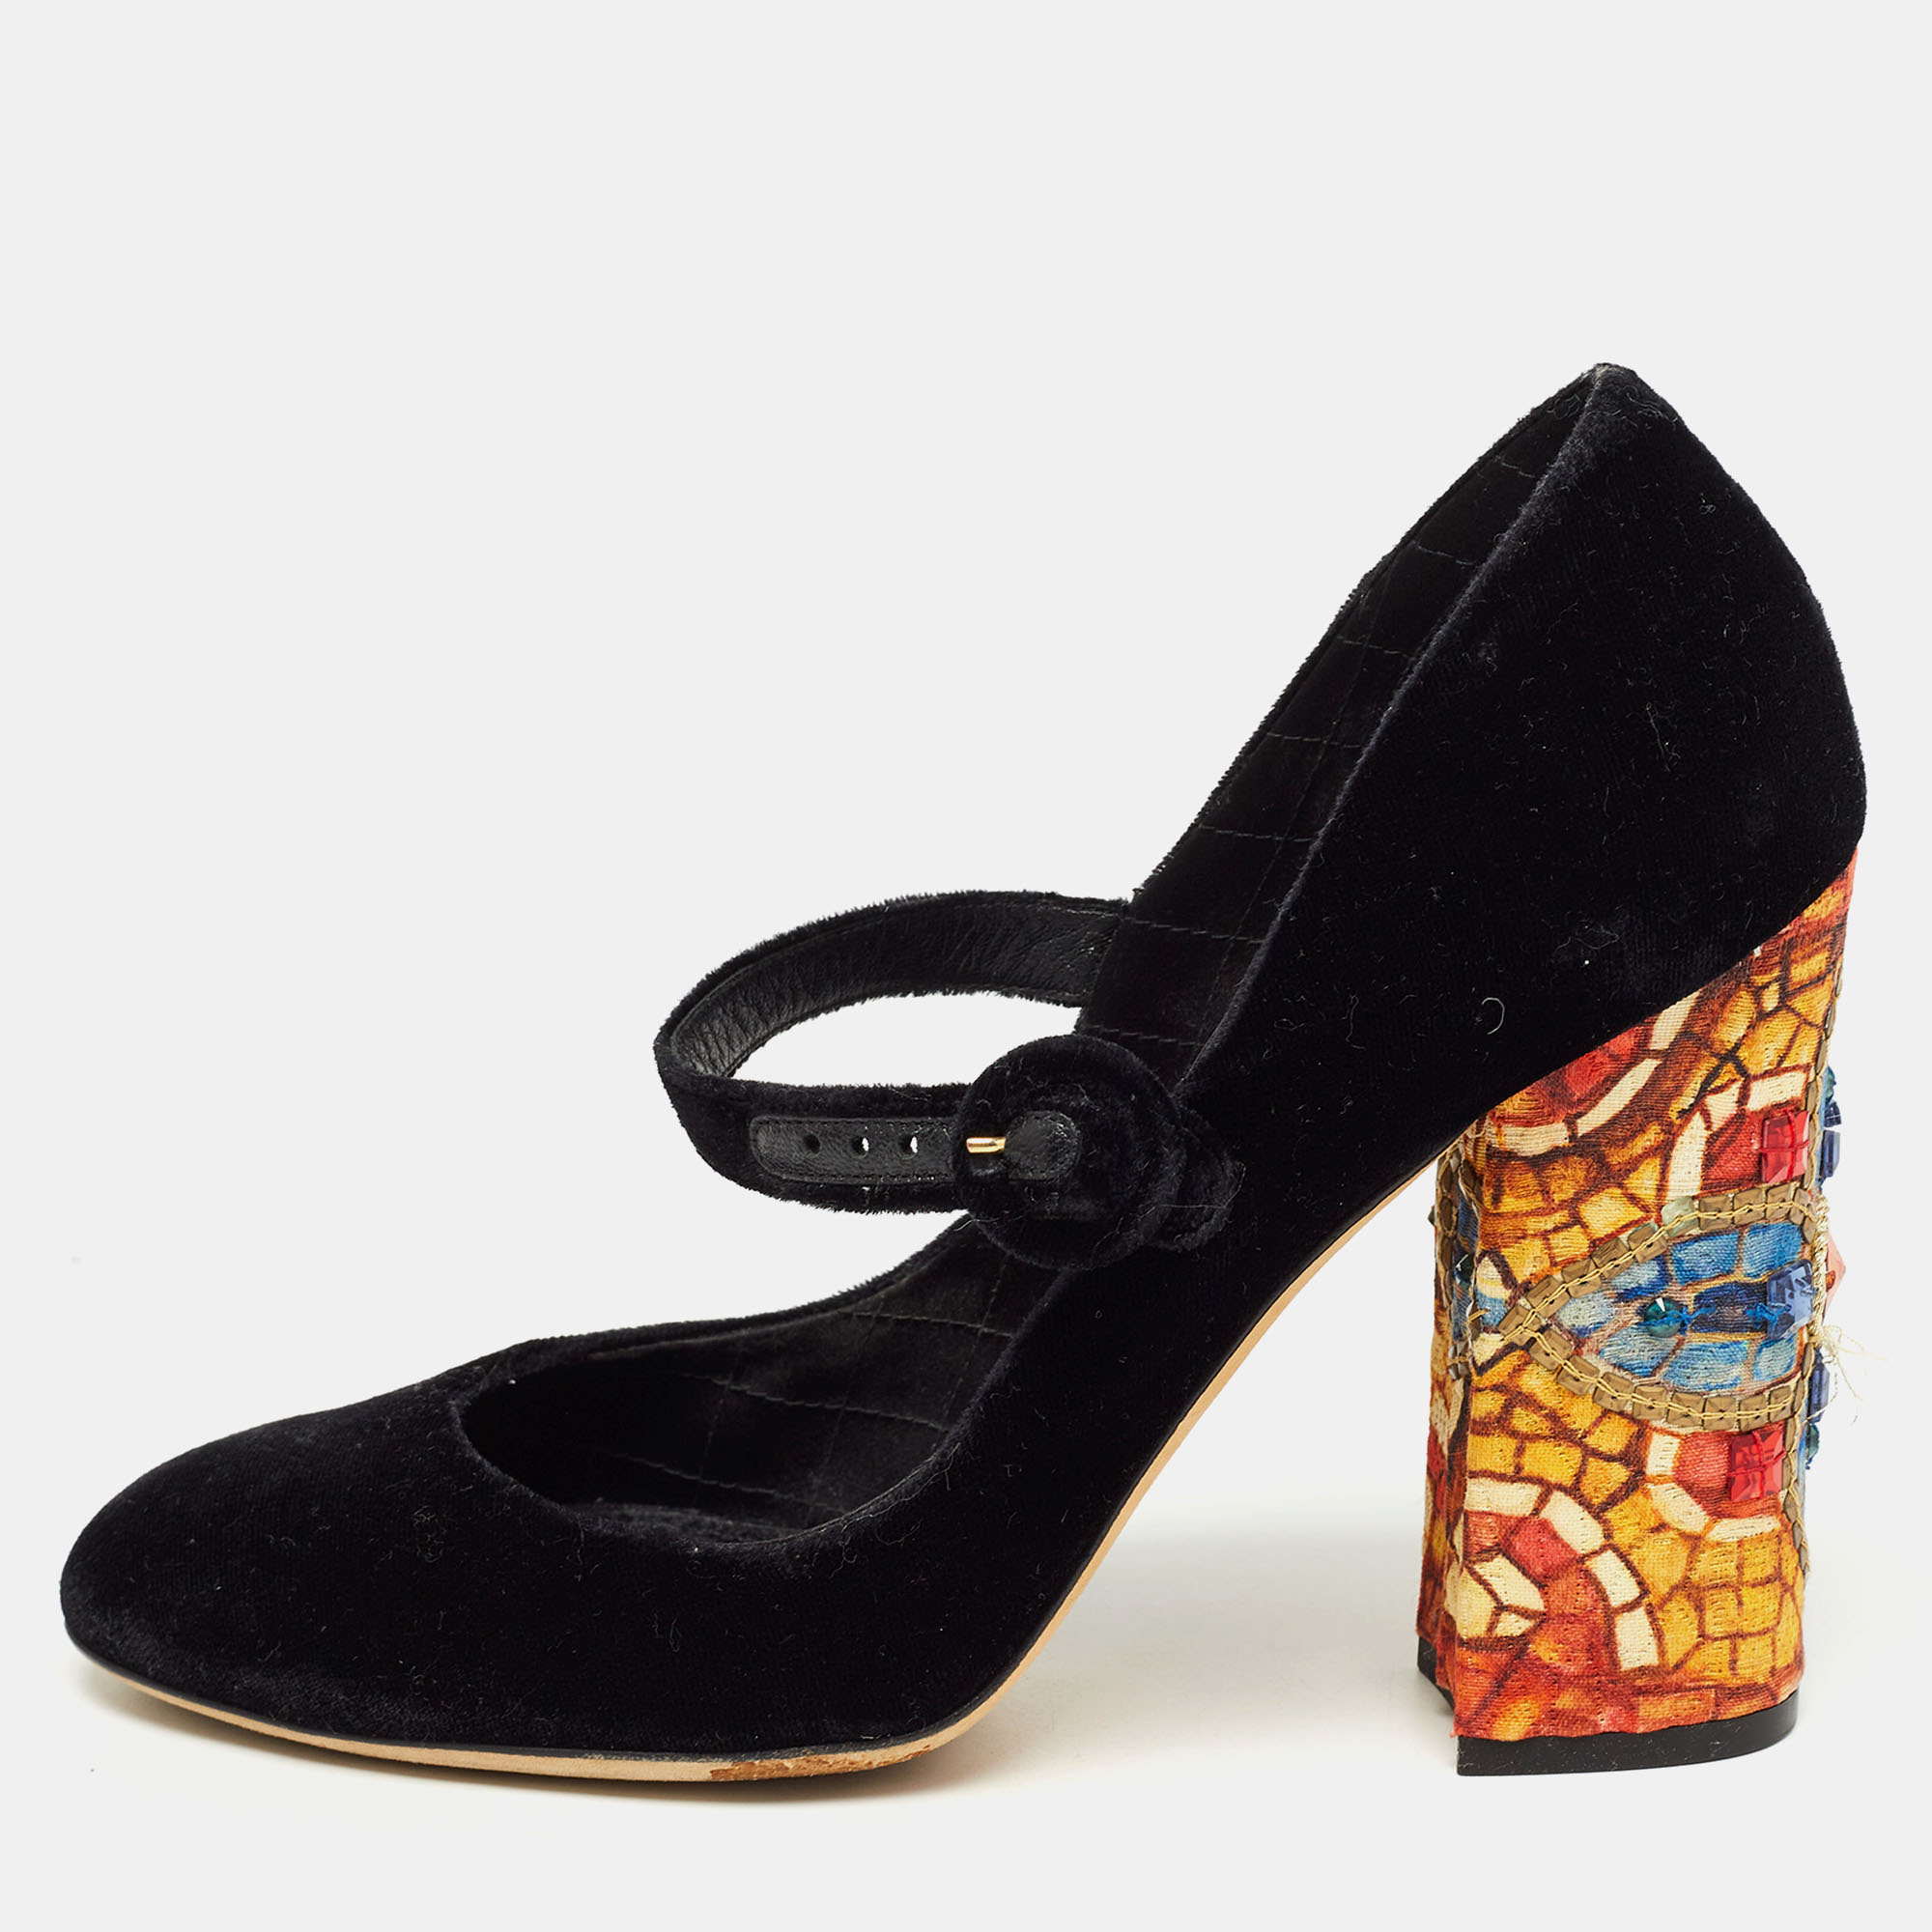 Pre-owned Dolce & Gabbana Black Velvet Crystal Embellished Printed Block Heel Mary Jane Pumps Size 40